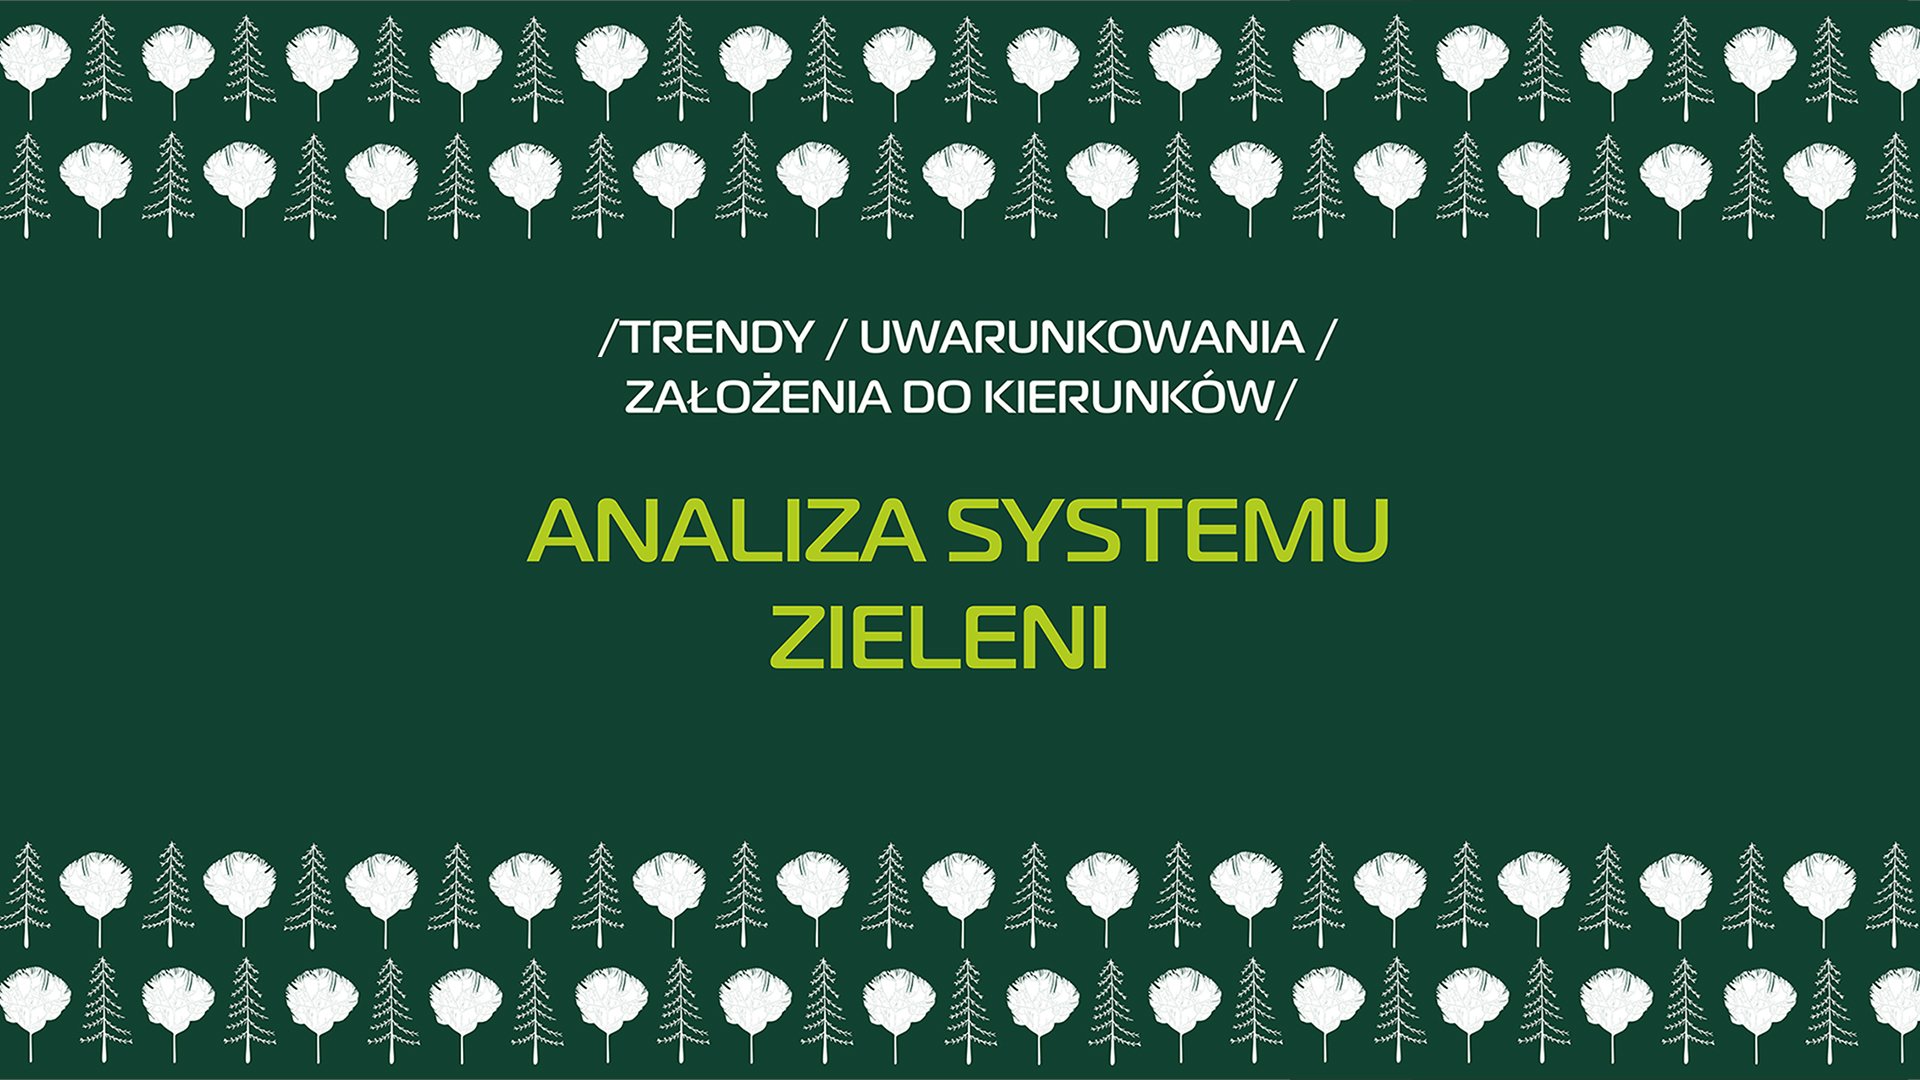 Analiza systemu zieleni - prezentacja.